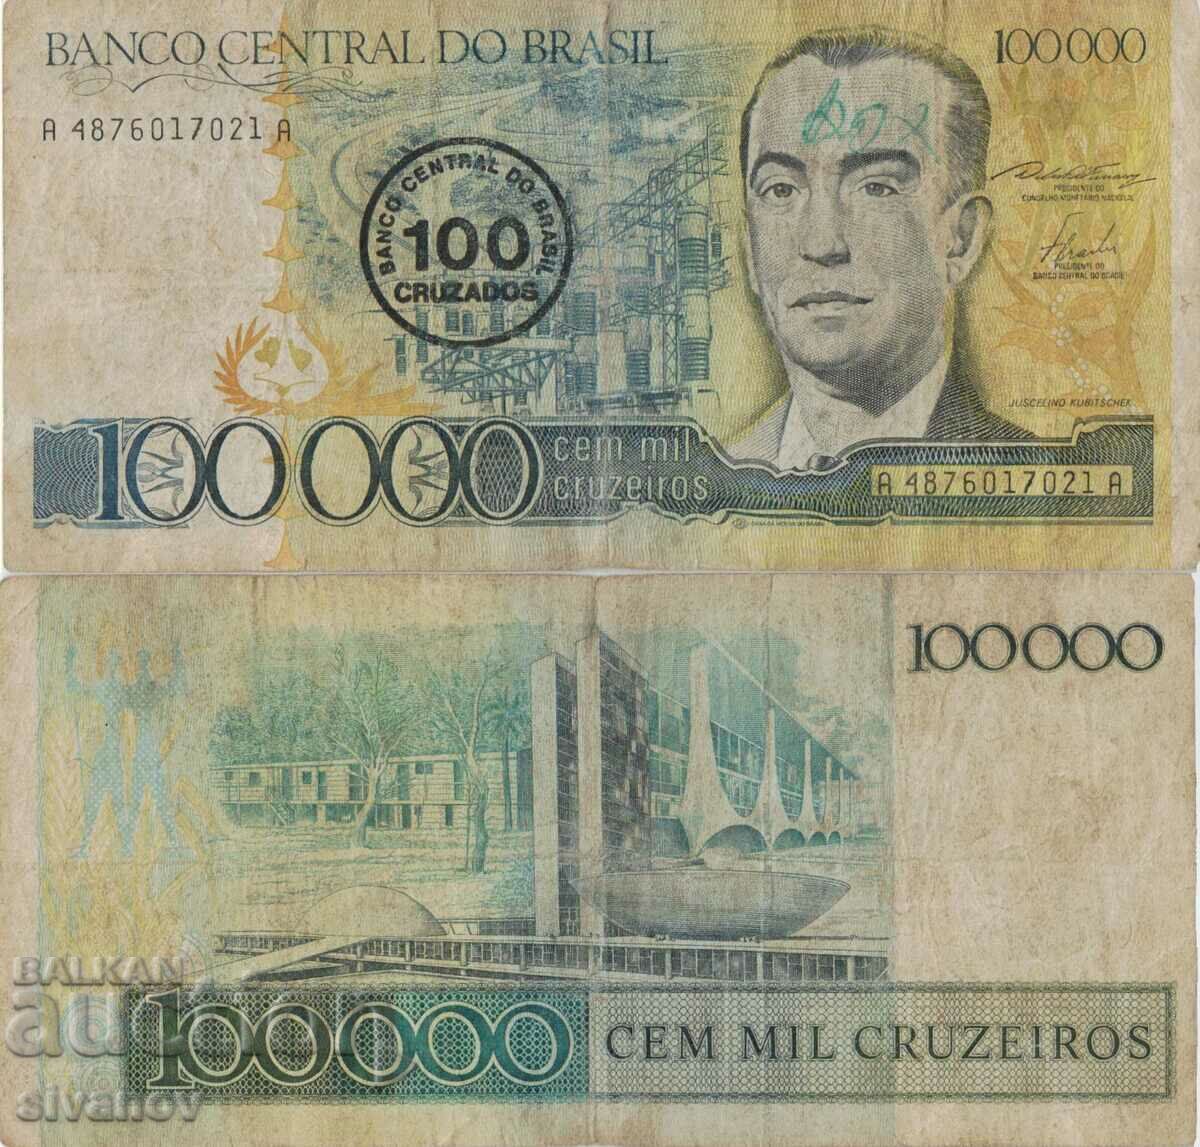 Brazil 100 cruzados on 100,000 cruzeiros 1986#5279